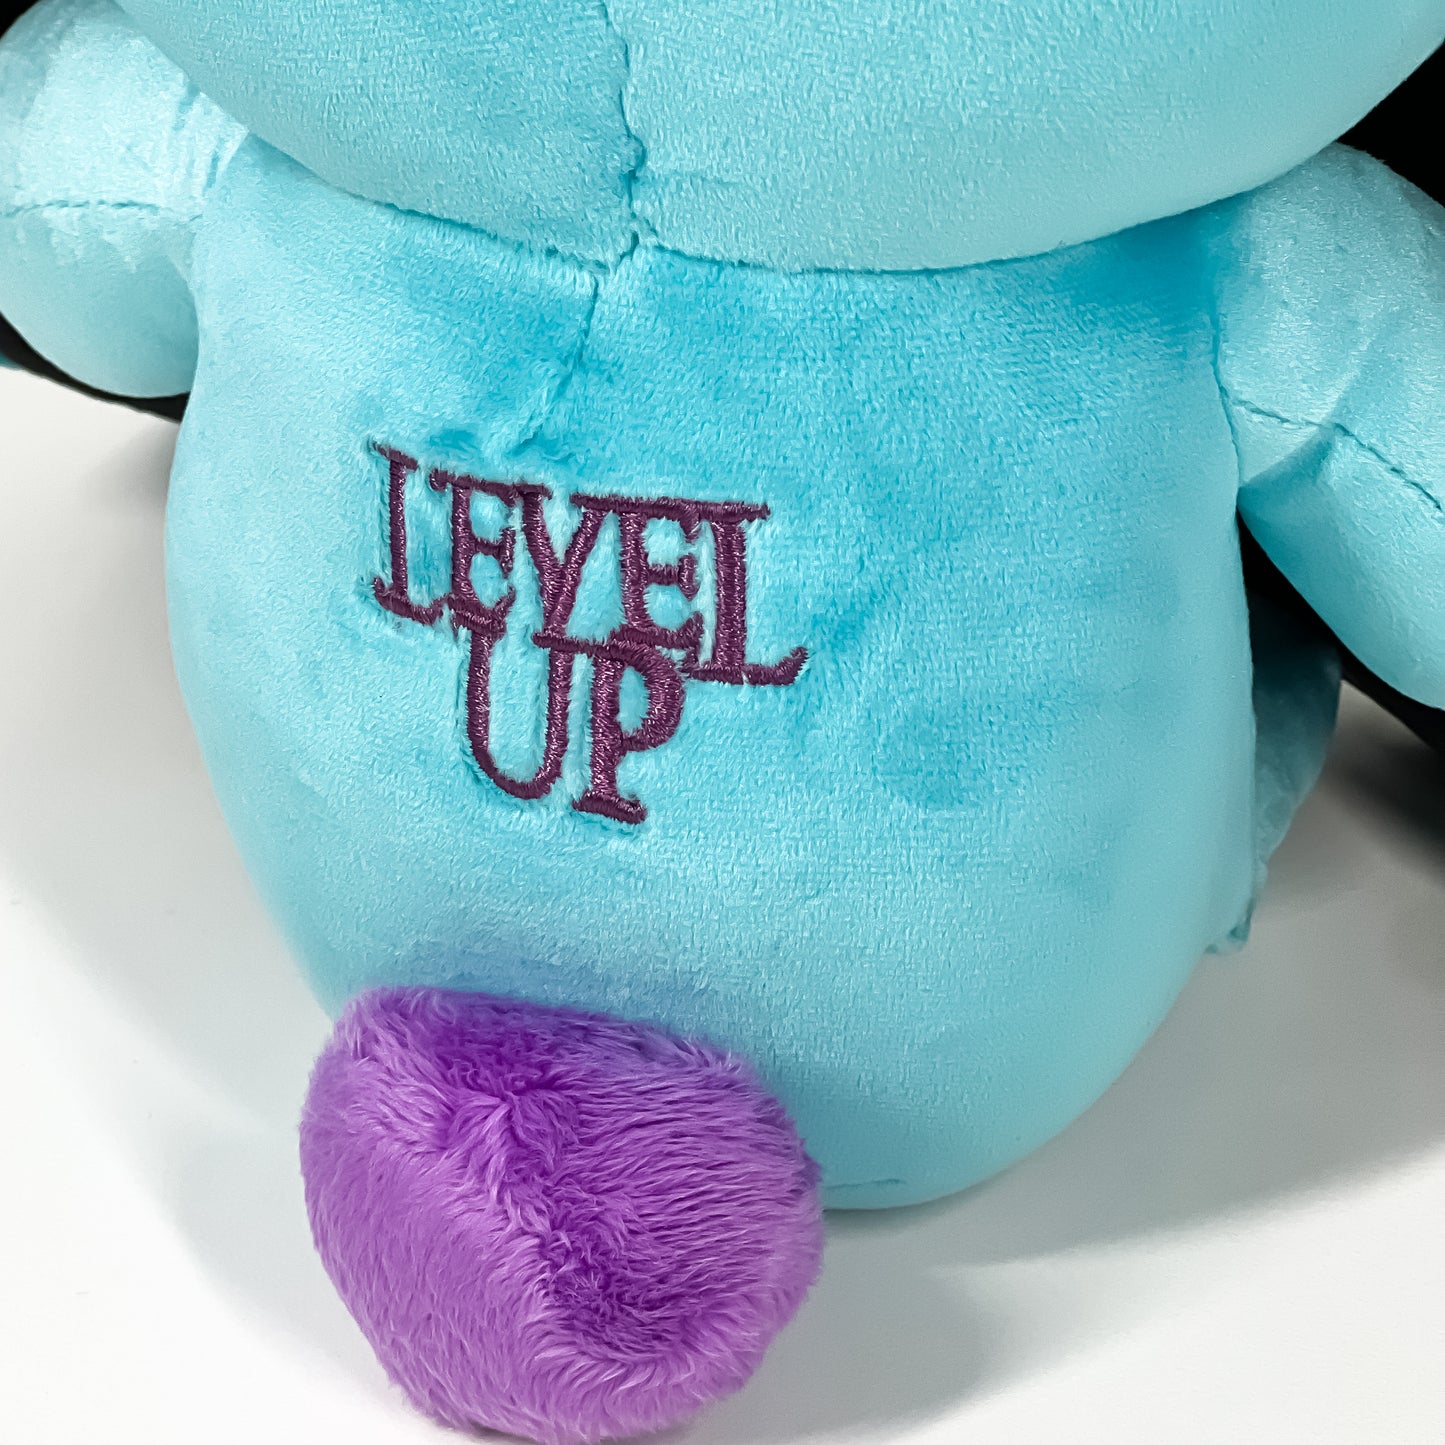 Level Up - Menace Bunny Plushie